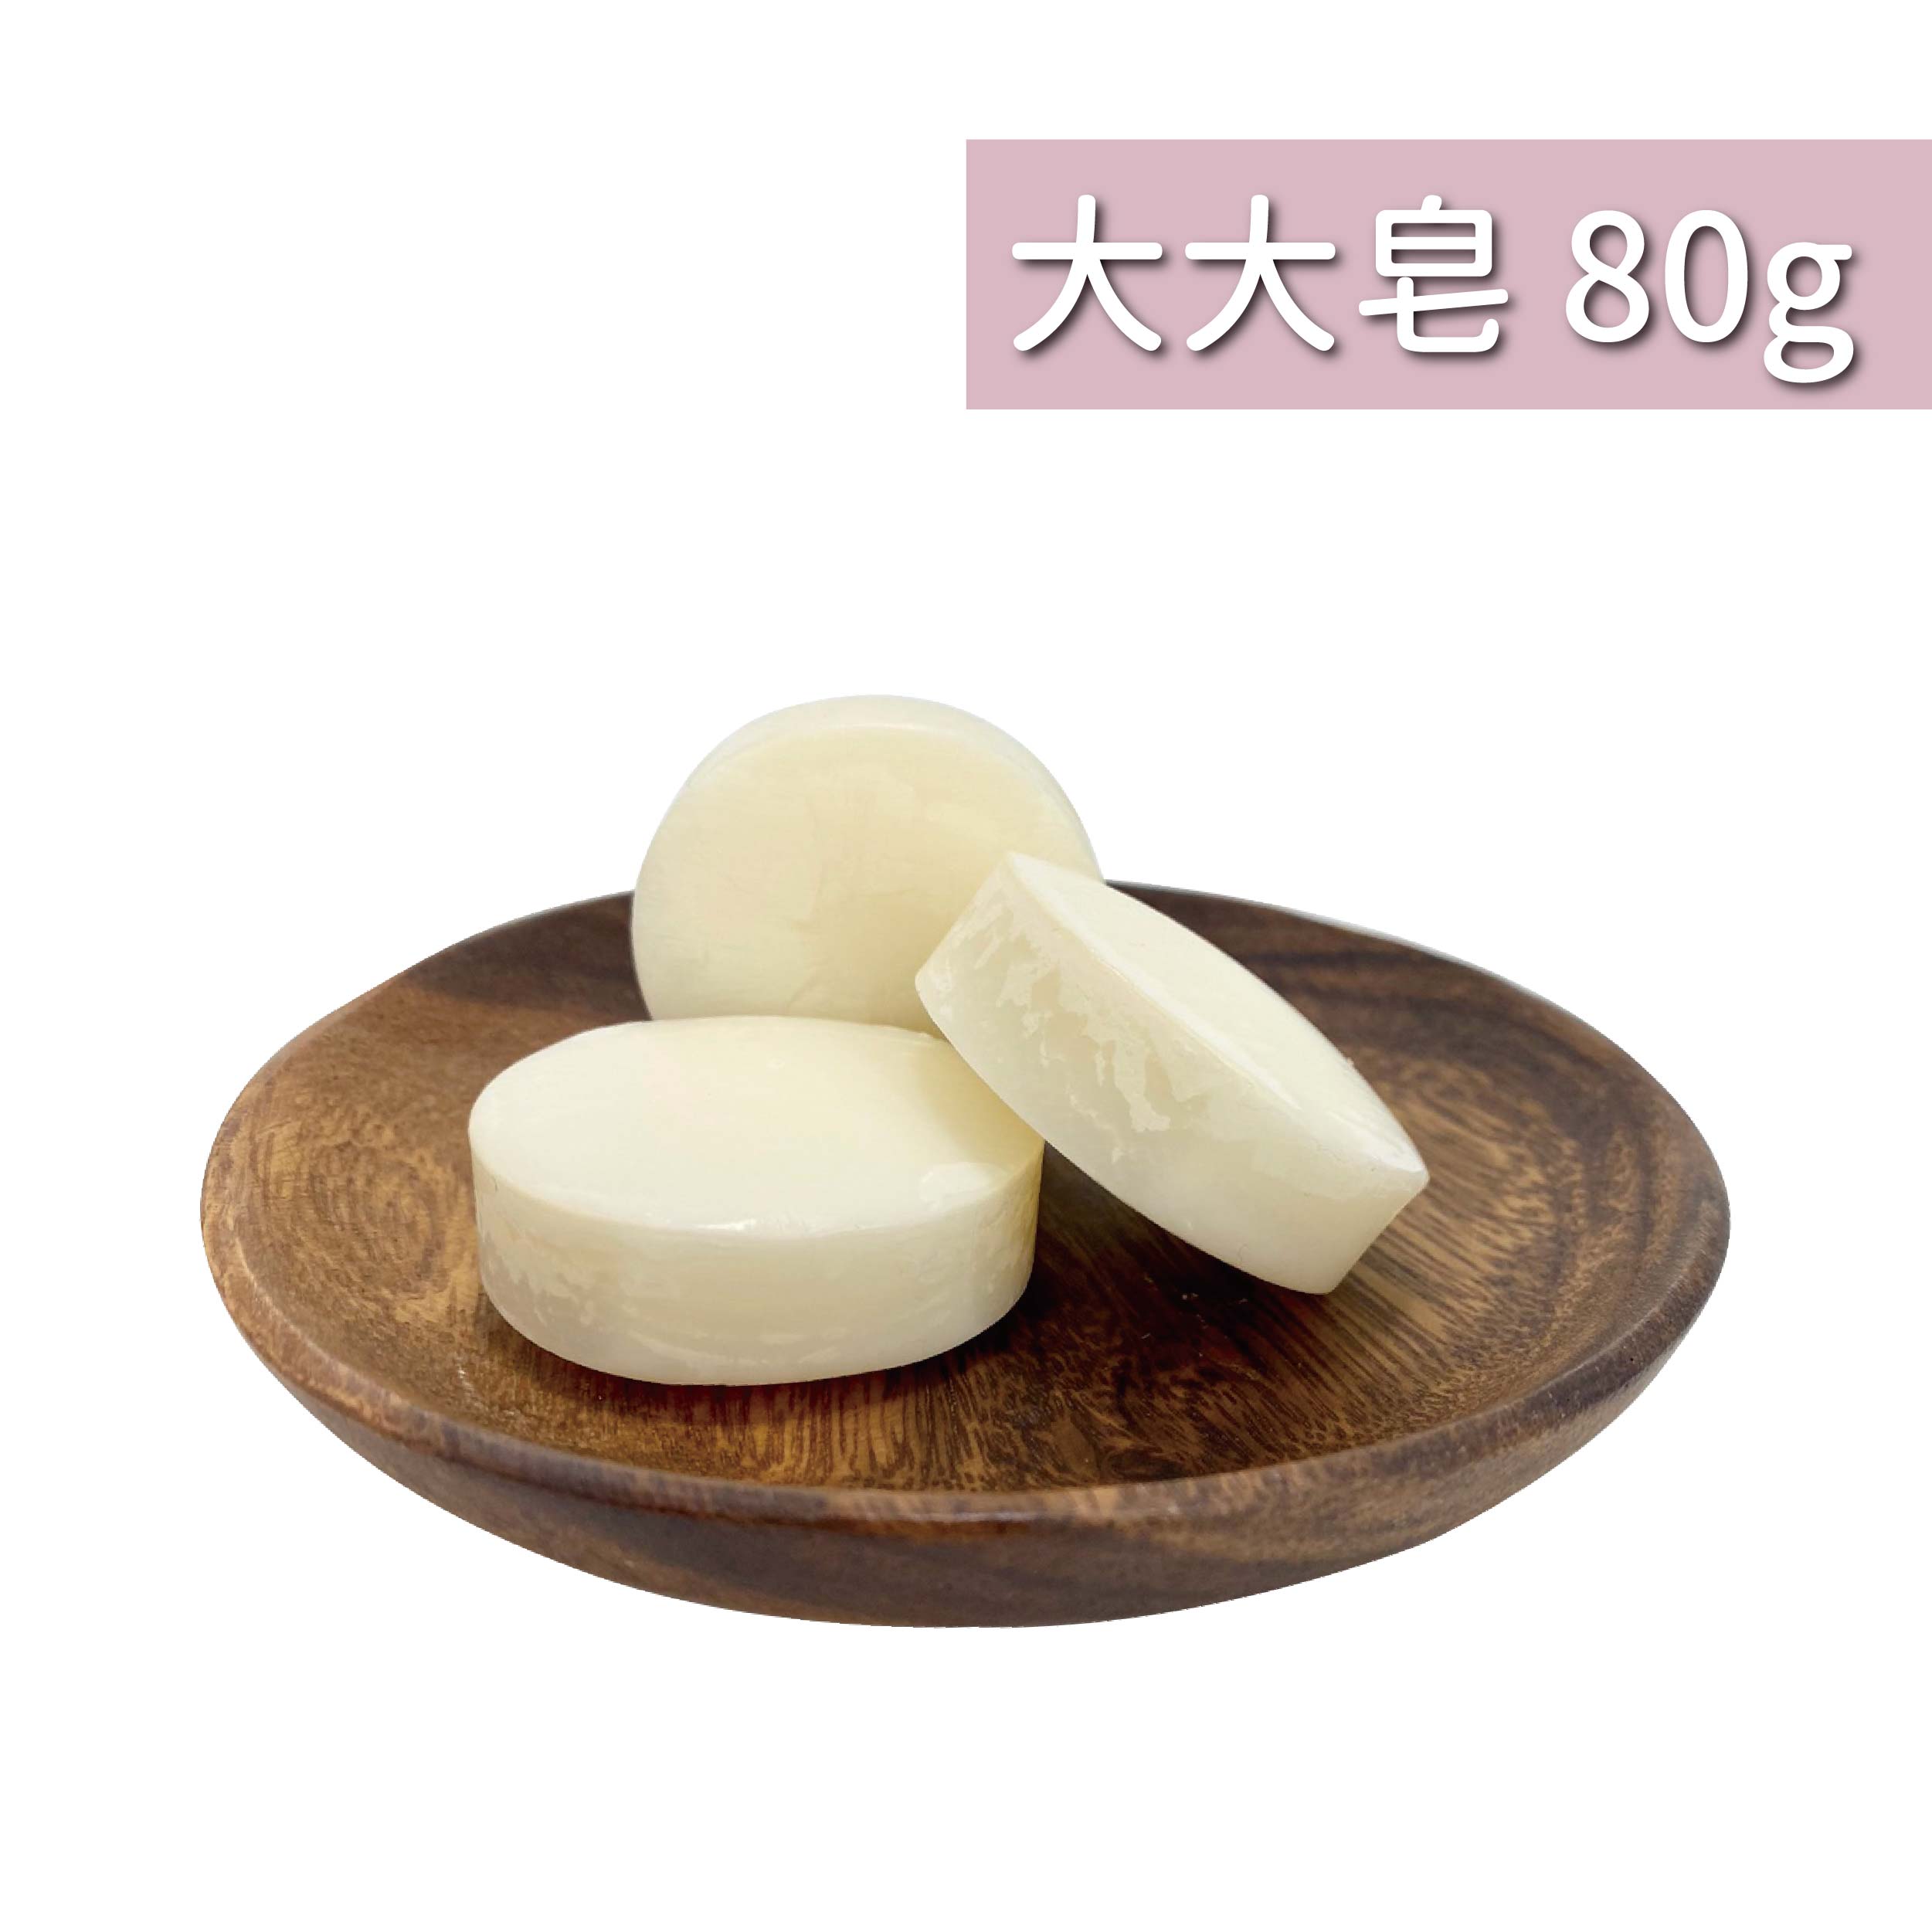 蠶絲蛋白大大美皂 80g(預購中)